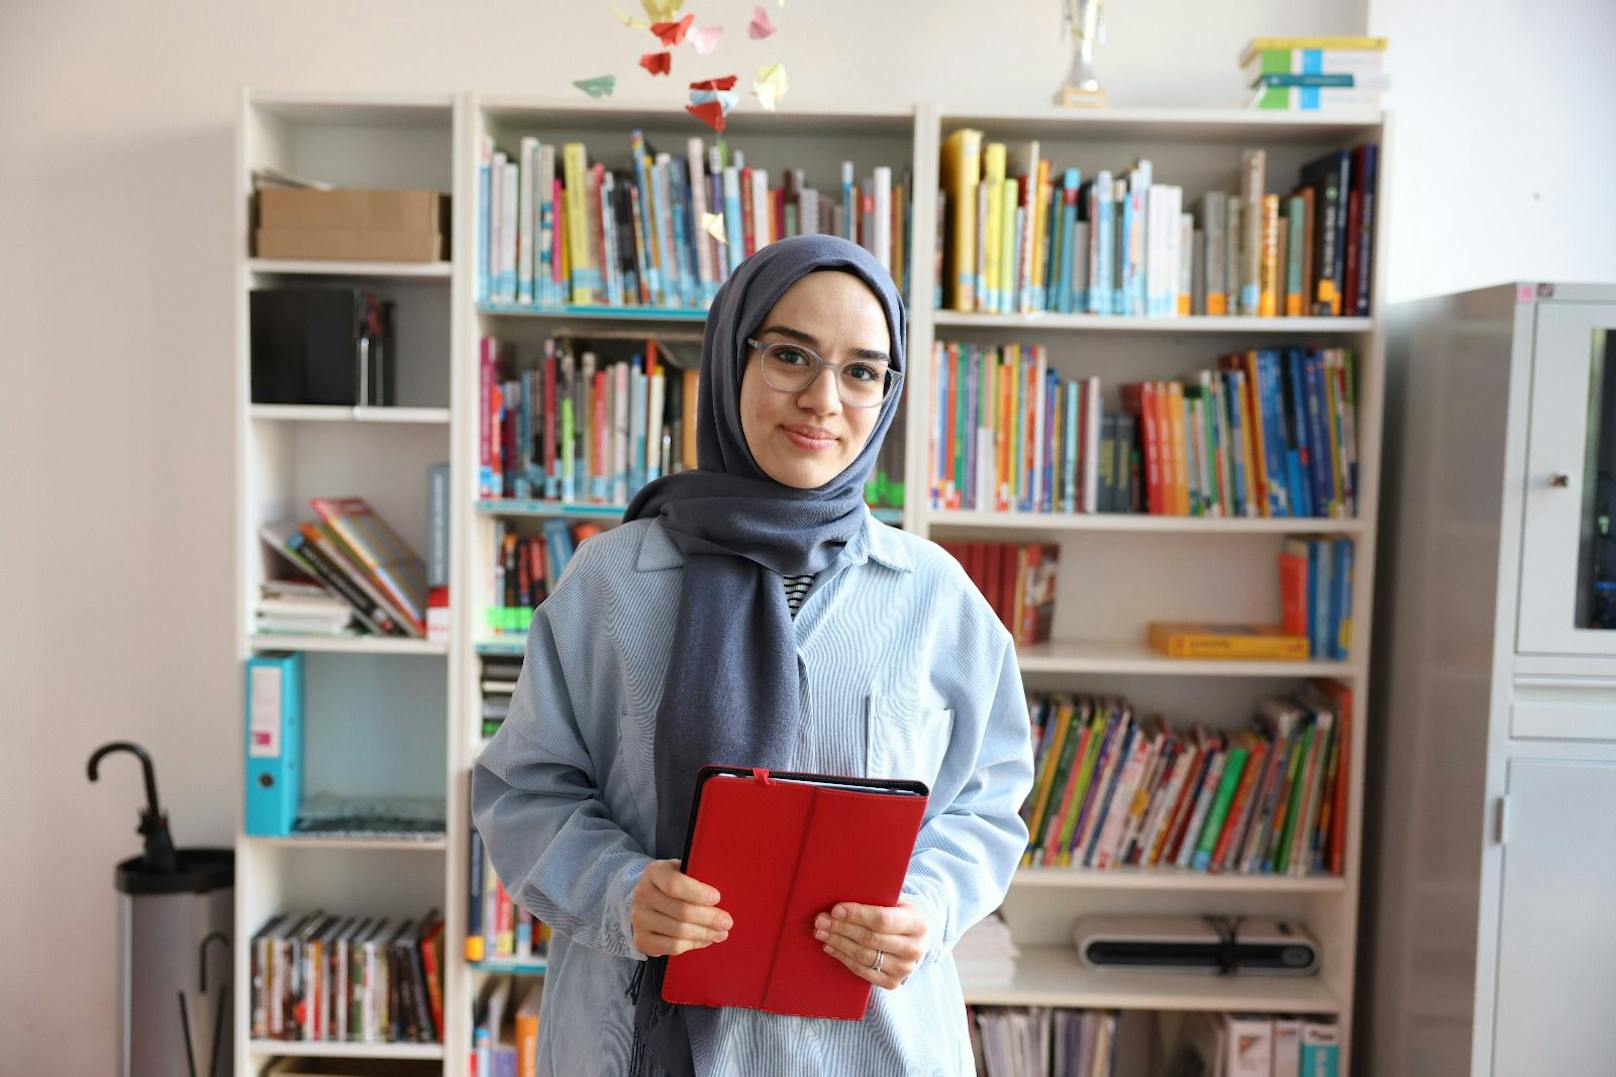 Um Mädchen und jungen Frauen auf ihrem Weg ins Erwachsensein zu begleiten, startet nun das neue Projekt "basis". Mehriban (28) hat als 14-Jährige selbst die Beratung des Vereins in Anspruch genommen. In der Schule war die junge Muslima mit Vorurteilen und Klischées konfrontiert. Nach Abschuss ihres Soziologie-Studiums will sie nun als Beraterin nun anderen helfen.